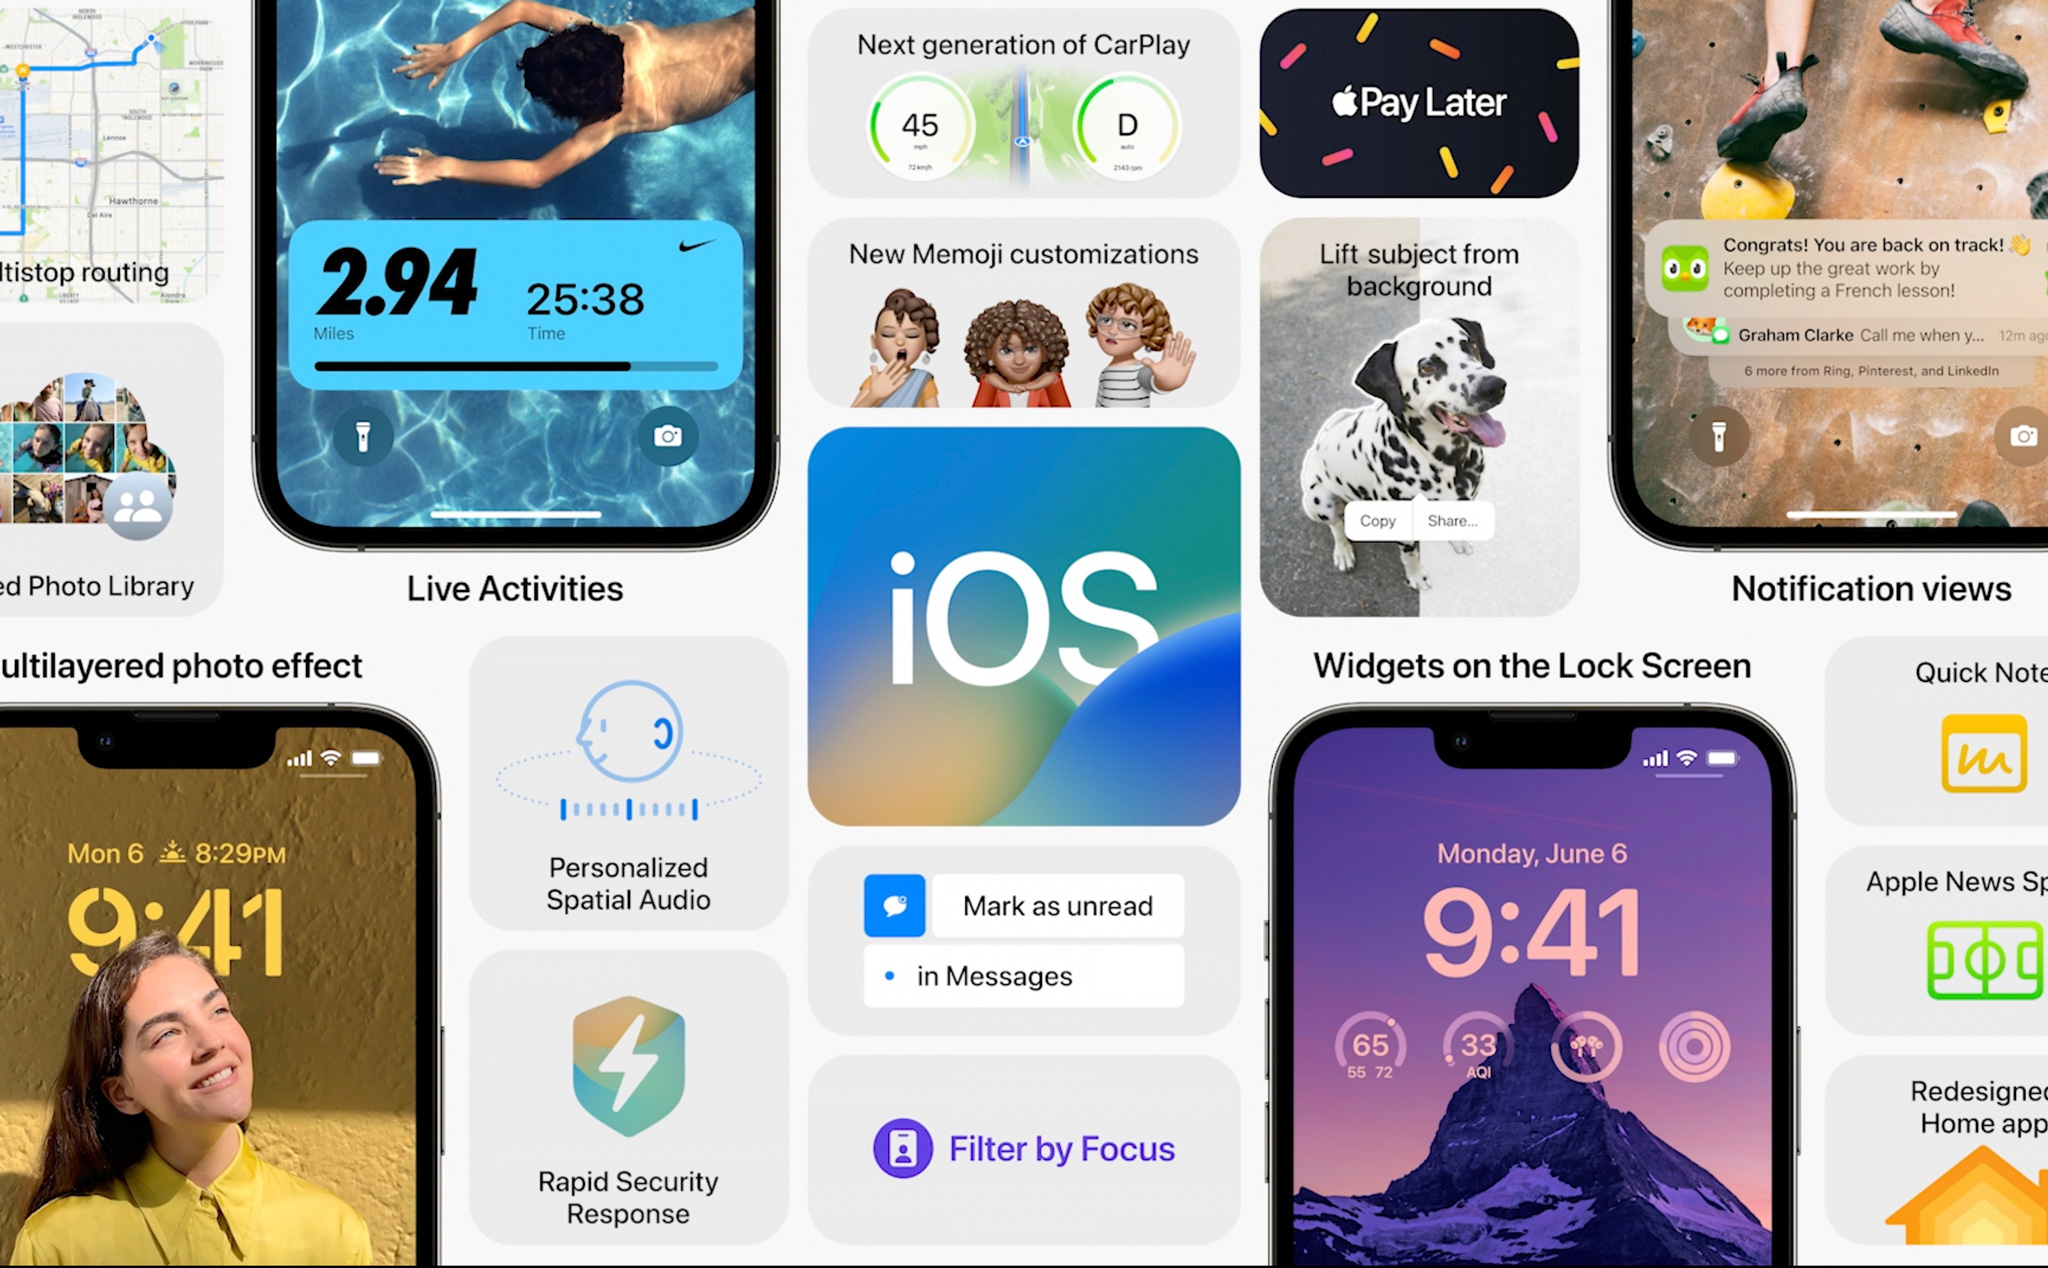 Màn hình khóa iOS 16: Hãy khám phá màn hình khóa của iOS 16 mới với nhiều tính năng mới lạ. Bạn có thể dễ dàng kiểm tra thông báo và truy cập các ứng dụng yêu thích chỉ bằng một lần chạm. Đừng bỏ lỡ cơ hội khám phá sự thú vị của màn hình khóa iOS